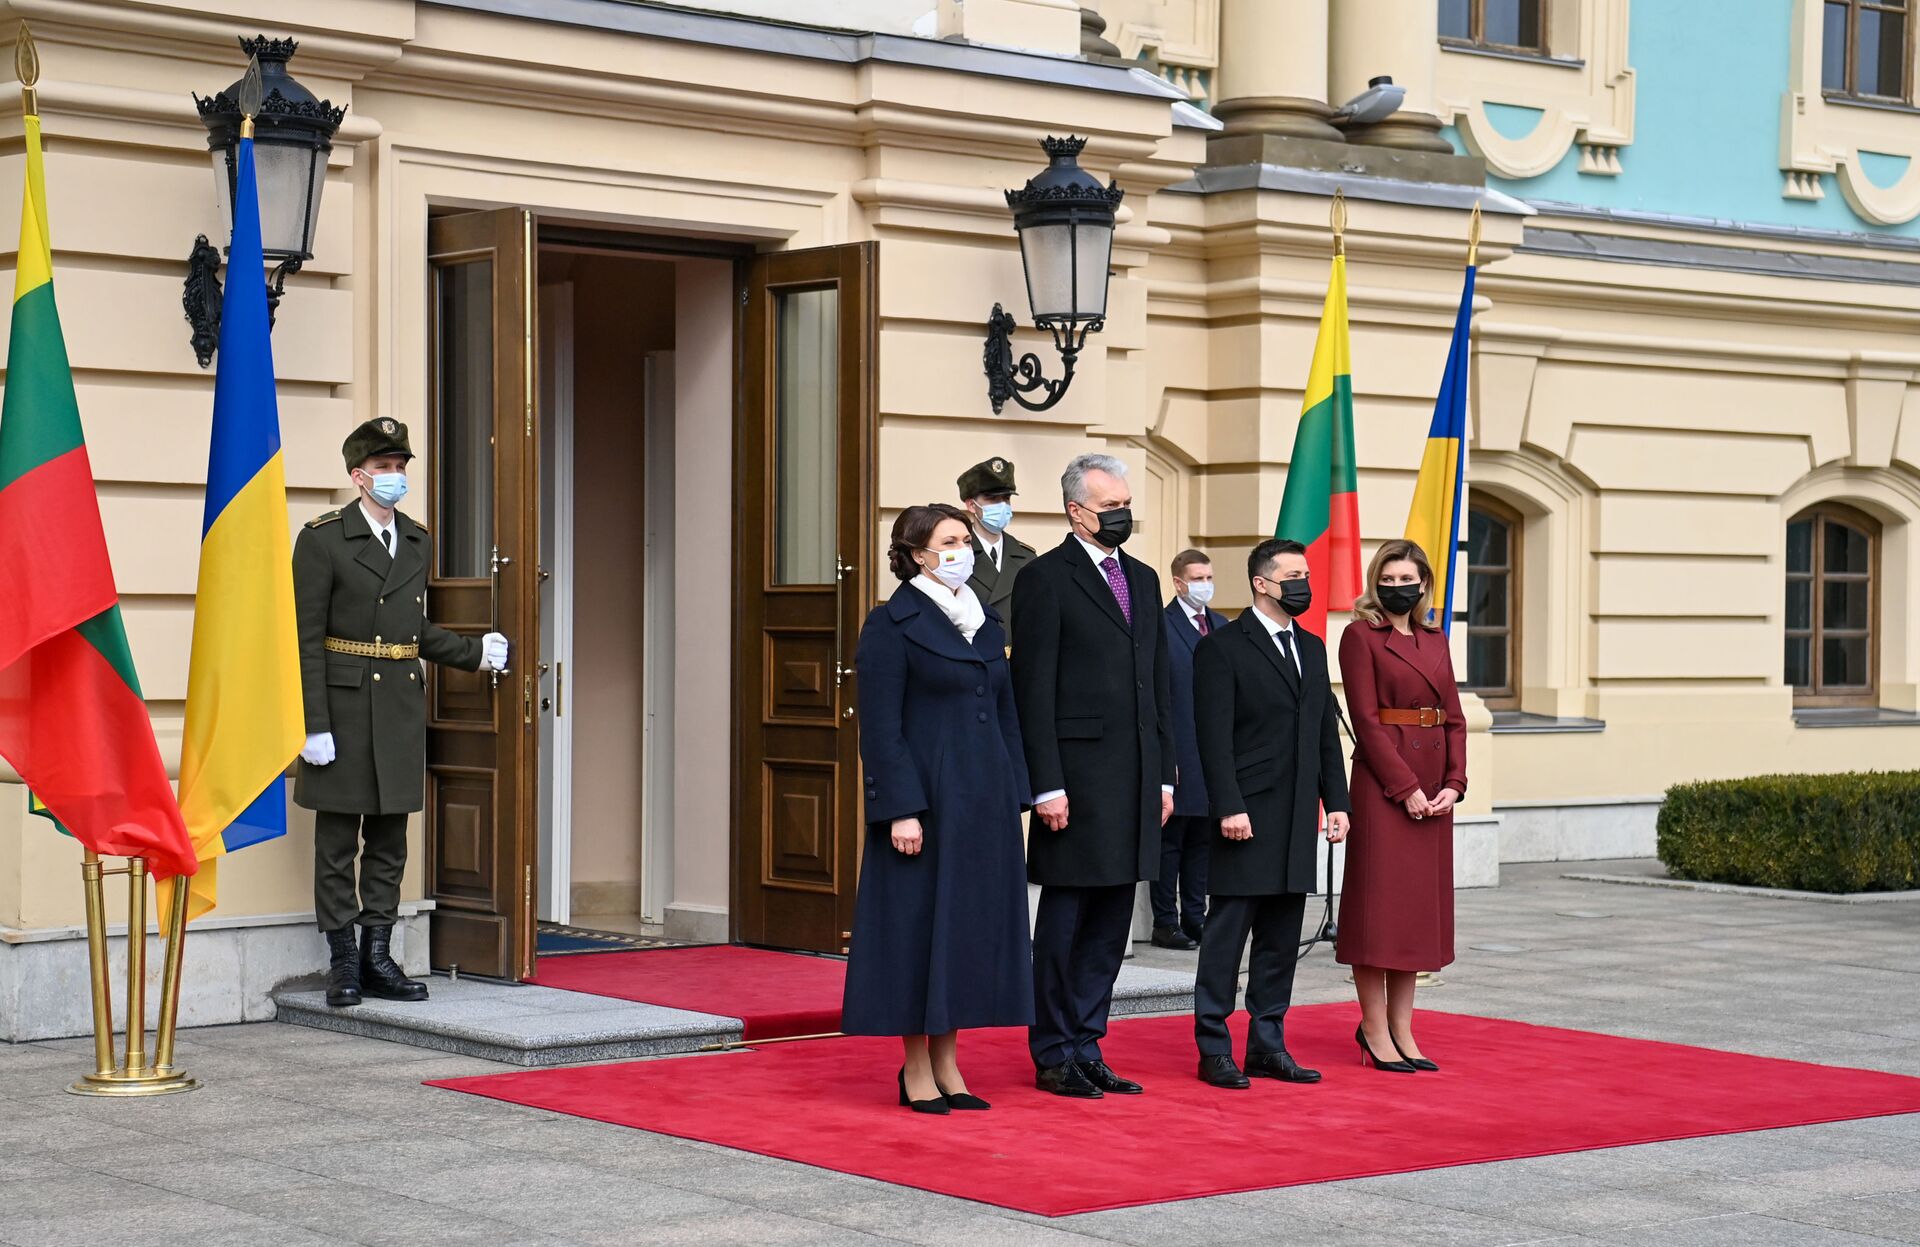 Встреча президента Литвы Гитанаса Науседы с президентом Украины Владимиром Зеленским, 18 марта 2021 года - Sputnik Литва, 1920, 12.05.2021